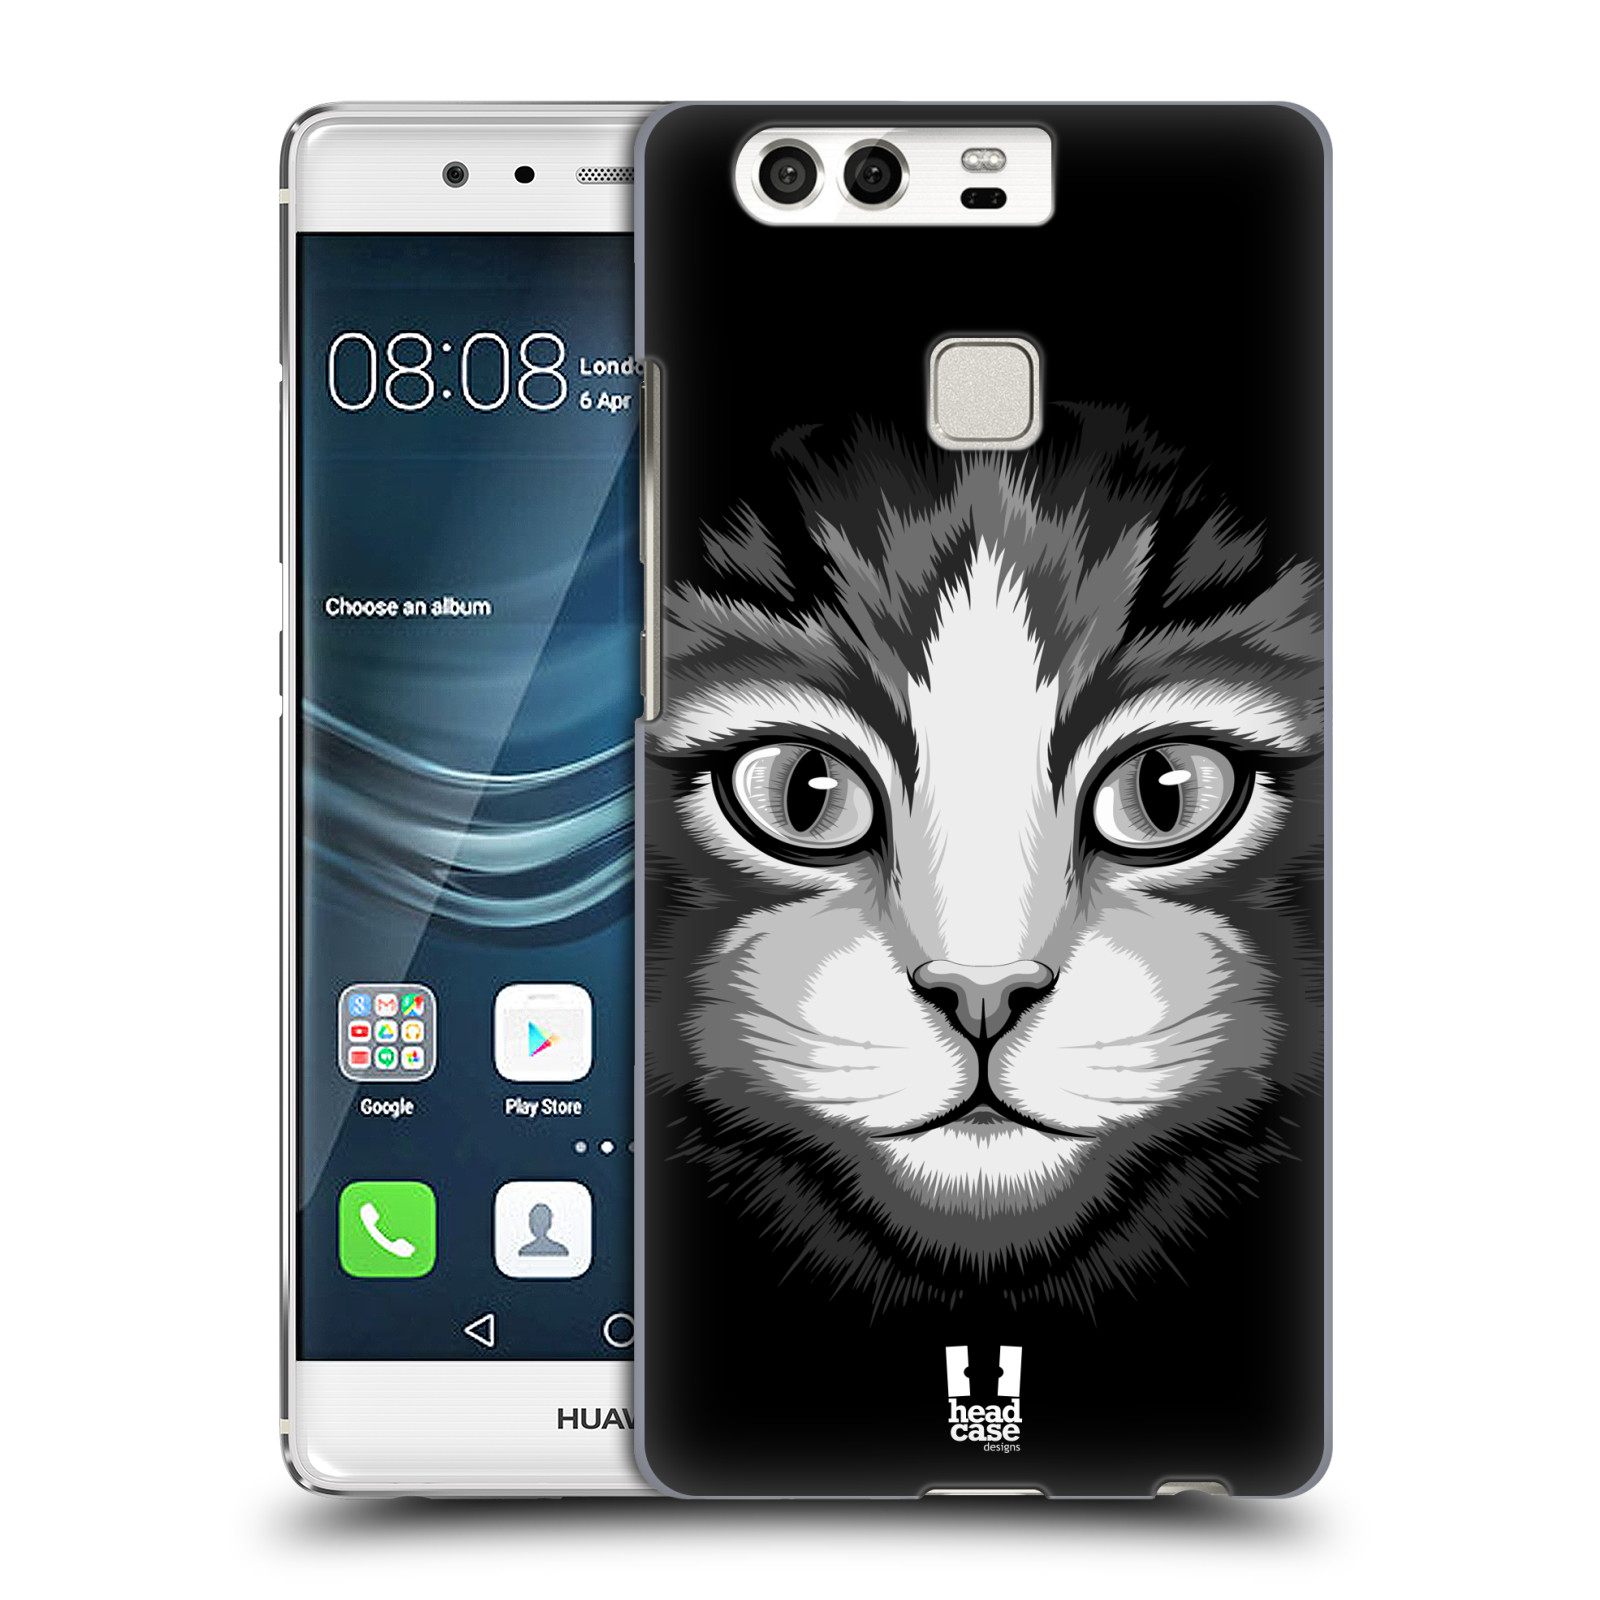 HEAD CASE plastový obal na mobil Huawei P9 / P9 DUAL SIM vzor Zvíře kreslená tvář 2 kočička